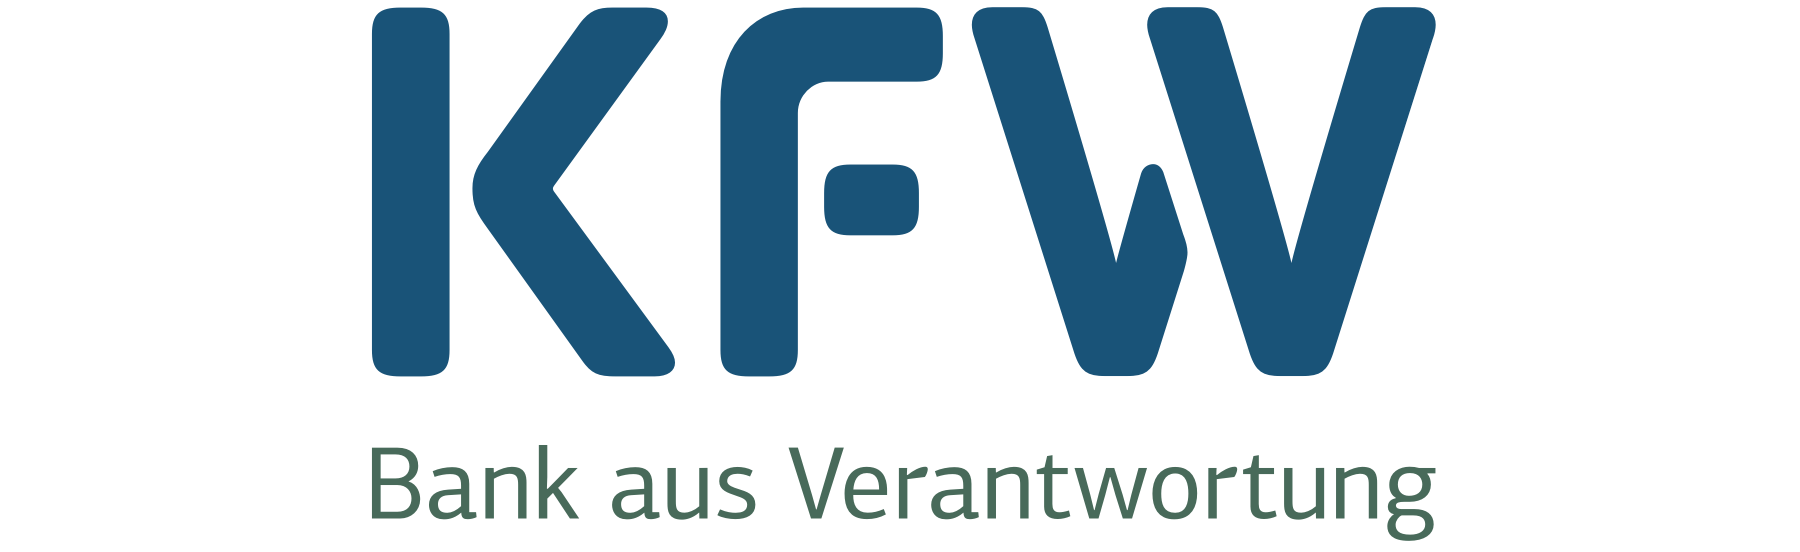 KfW-Logo.png logo